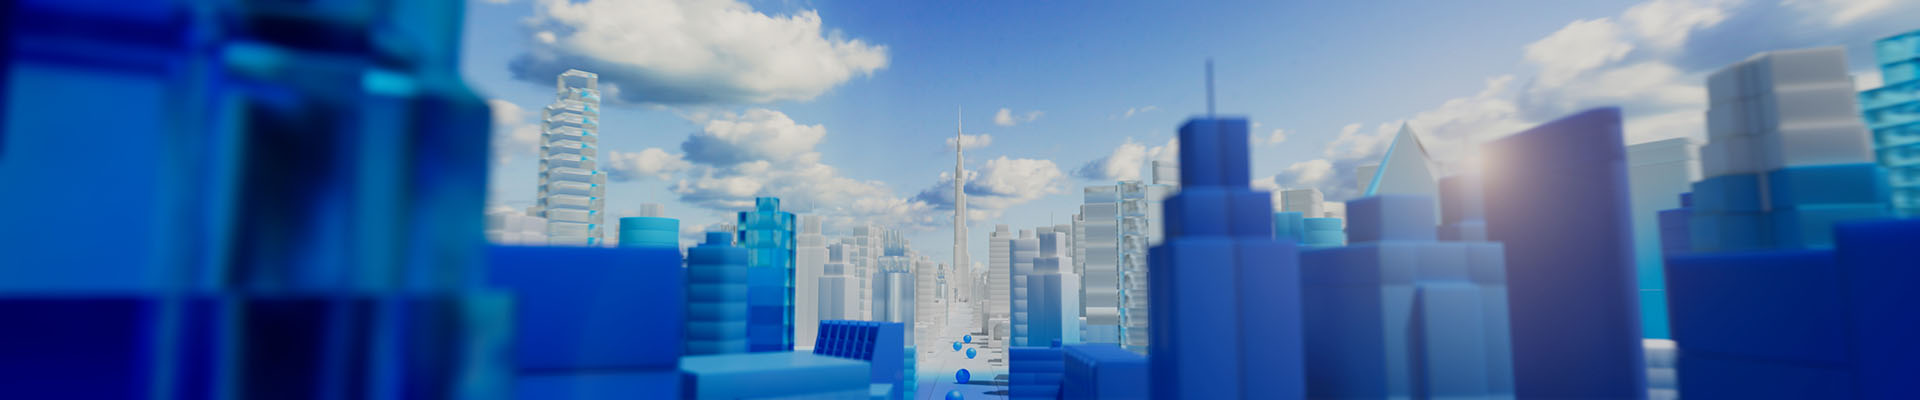 Dubai skyline 3D scene